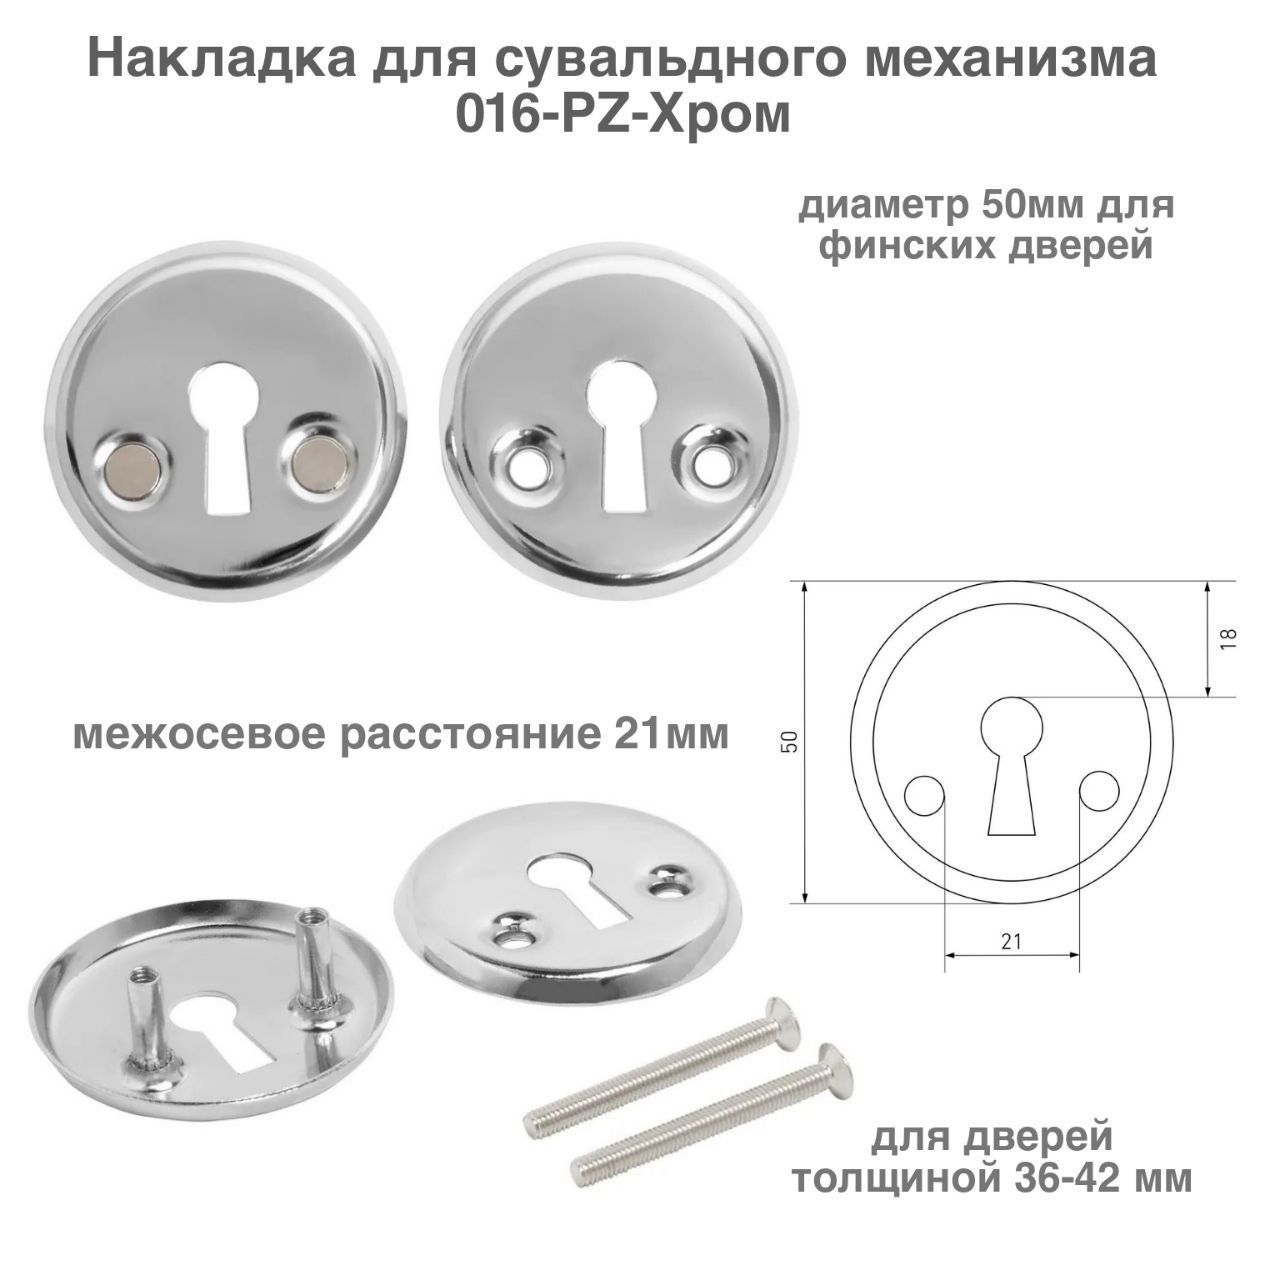 Накладка для сувальдного механизма диаметр 50мм 016-PZ-цвет хром накладка для сувальдного механизма для финских дверей аллюр